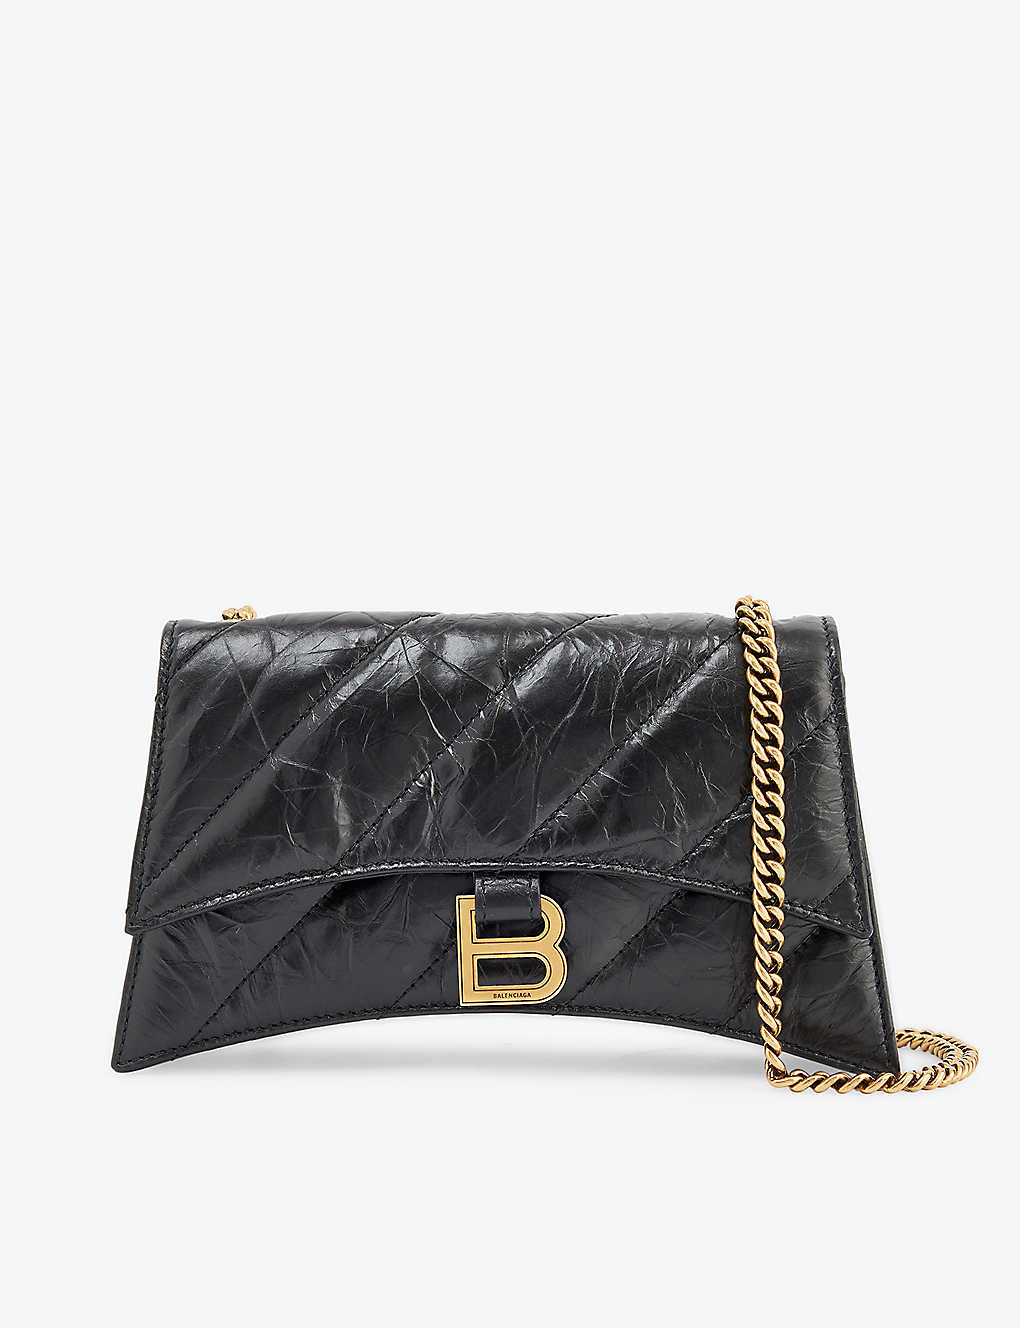 Balenciaga Hourglass Crinkled-leather Shoulder Bag In Black/gold